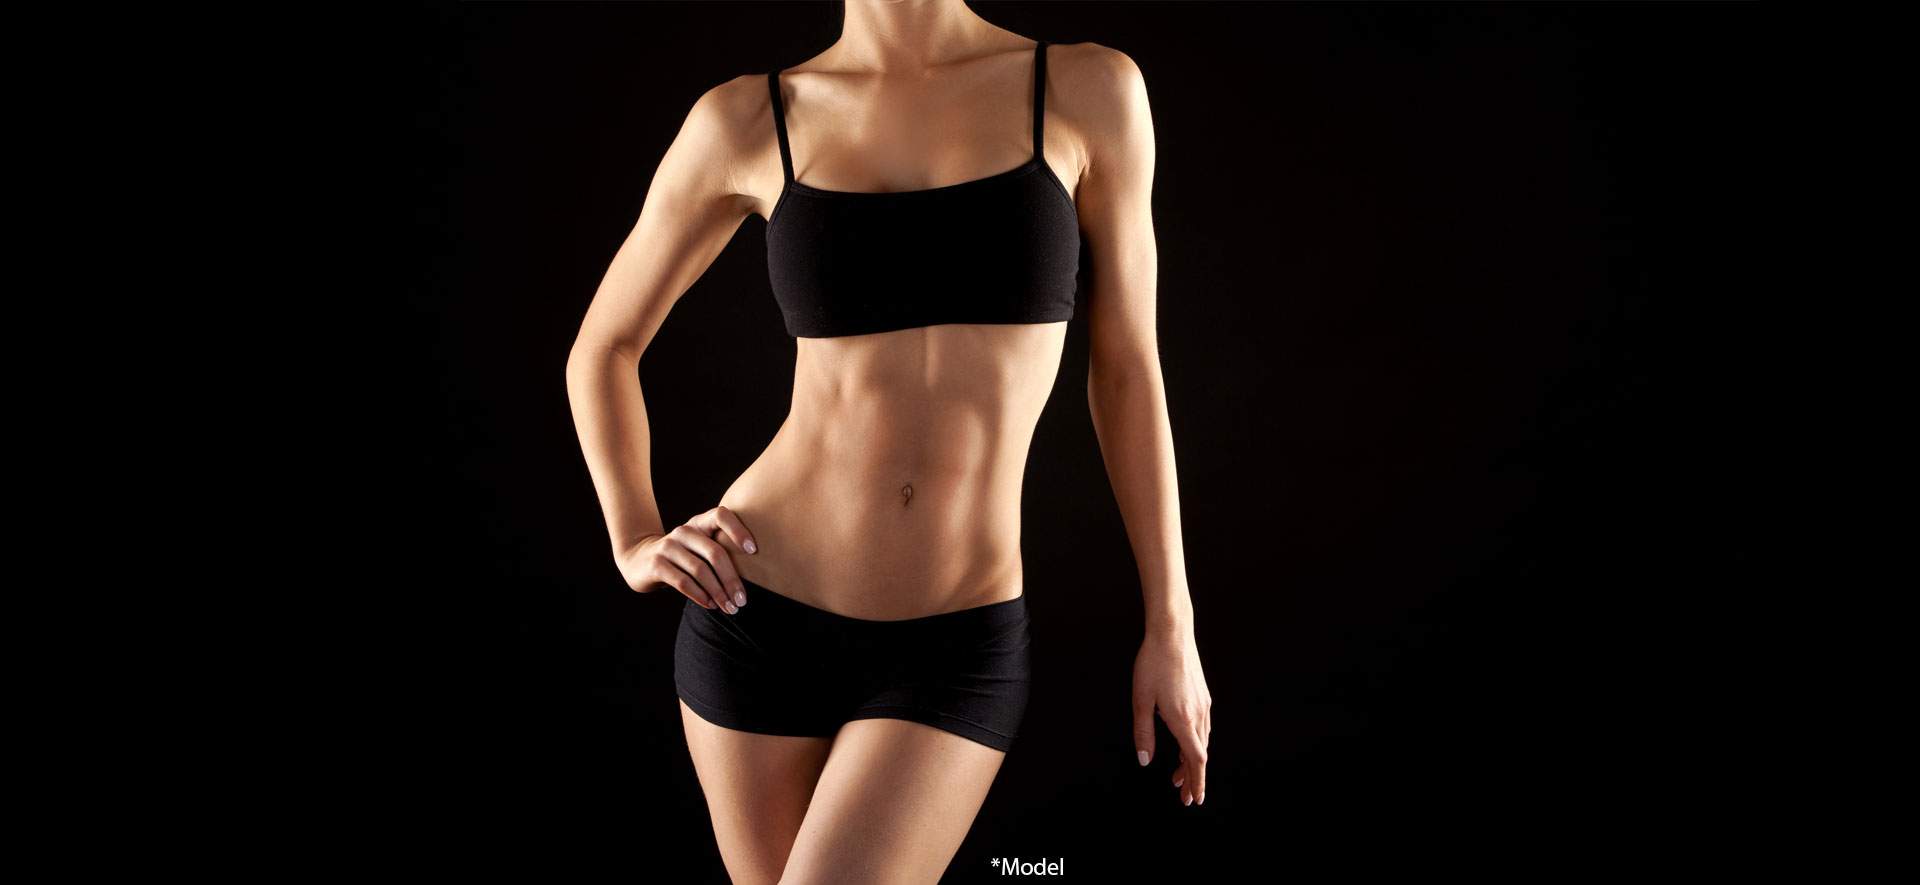 Female fitness model posing on black background